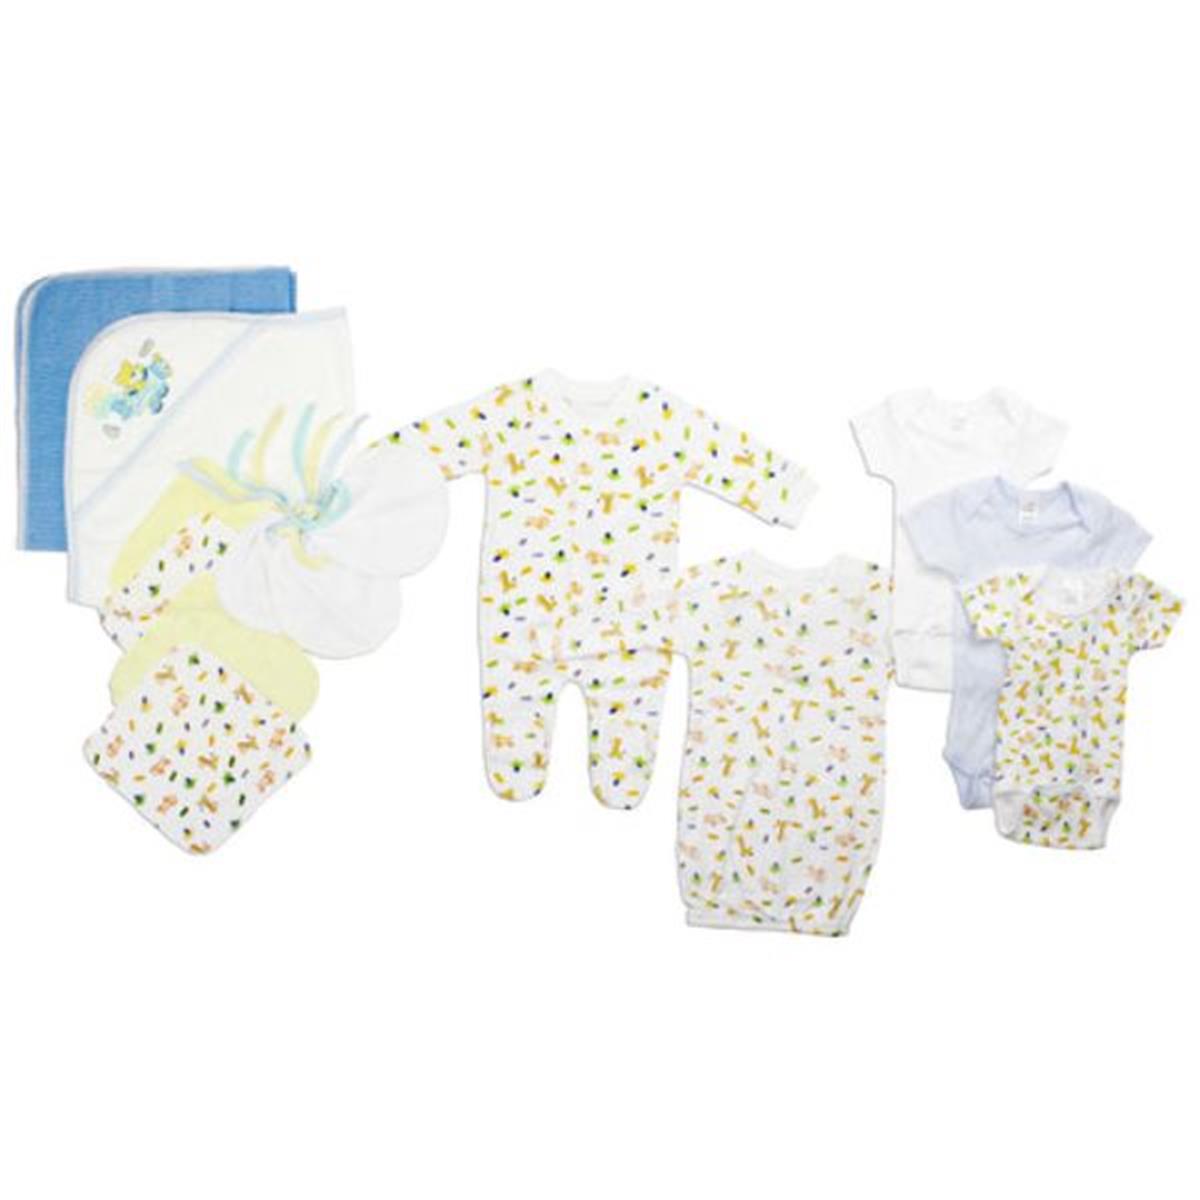 Bambini LS-0090 Newborn Baby Boys Layette Baby Shower Gift Set&#44; White & Blue - Newborn